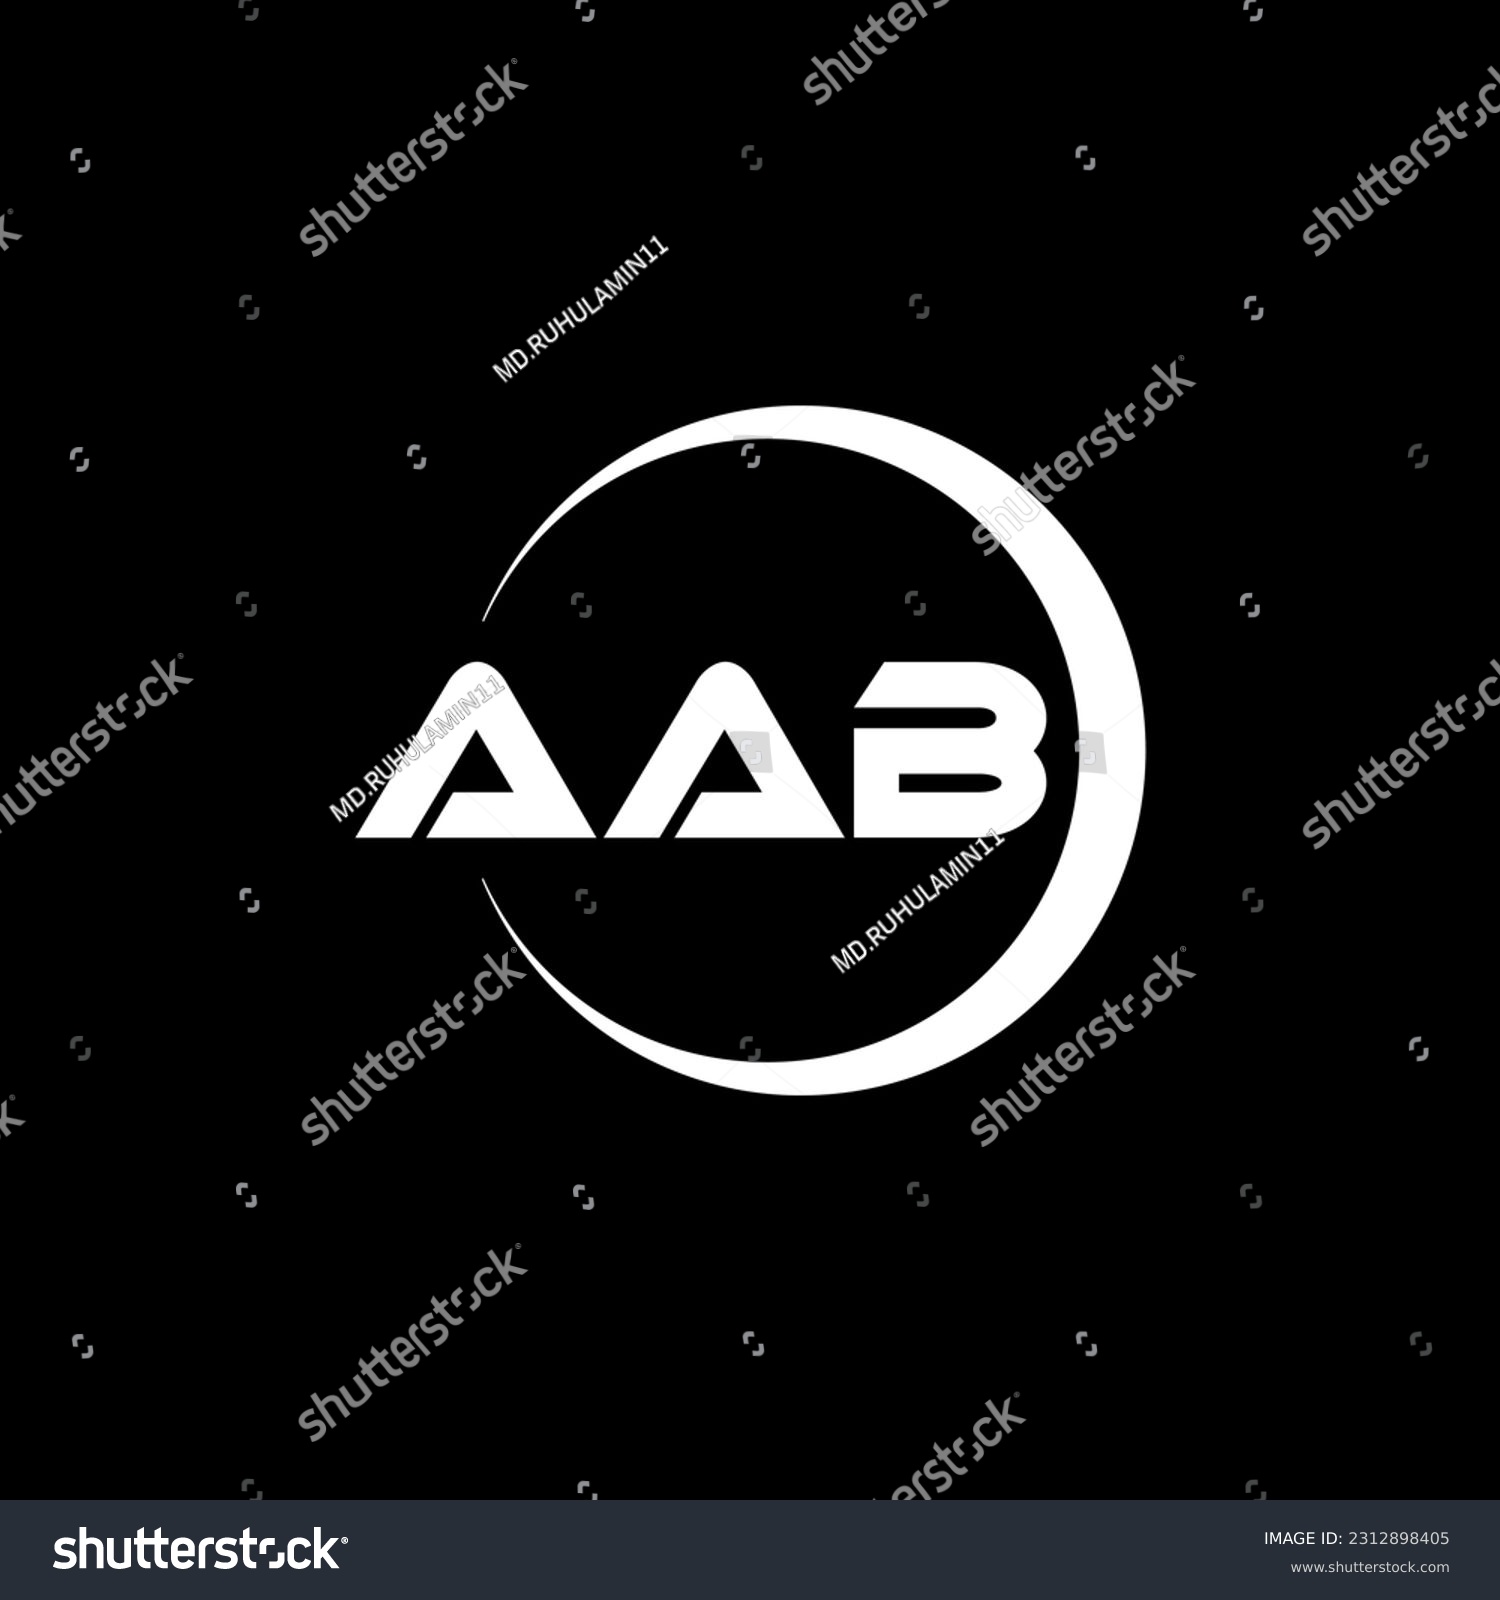 SVG of AAB letter logo design in illustration. Vector logo, calligraphy designs for logo, Poster, Invitation, etc. svg